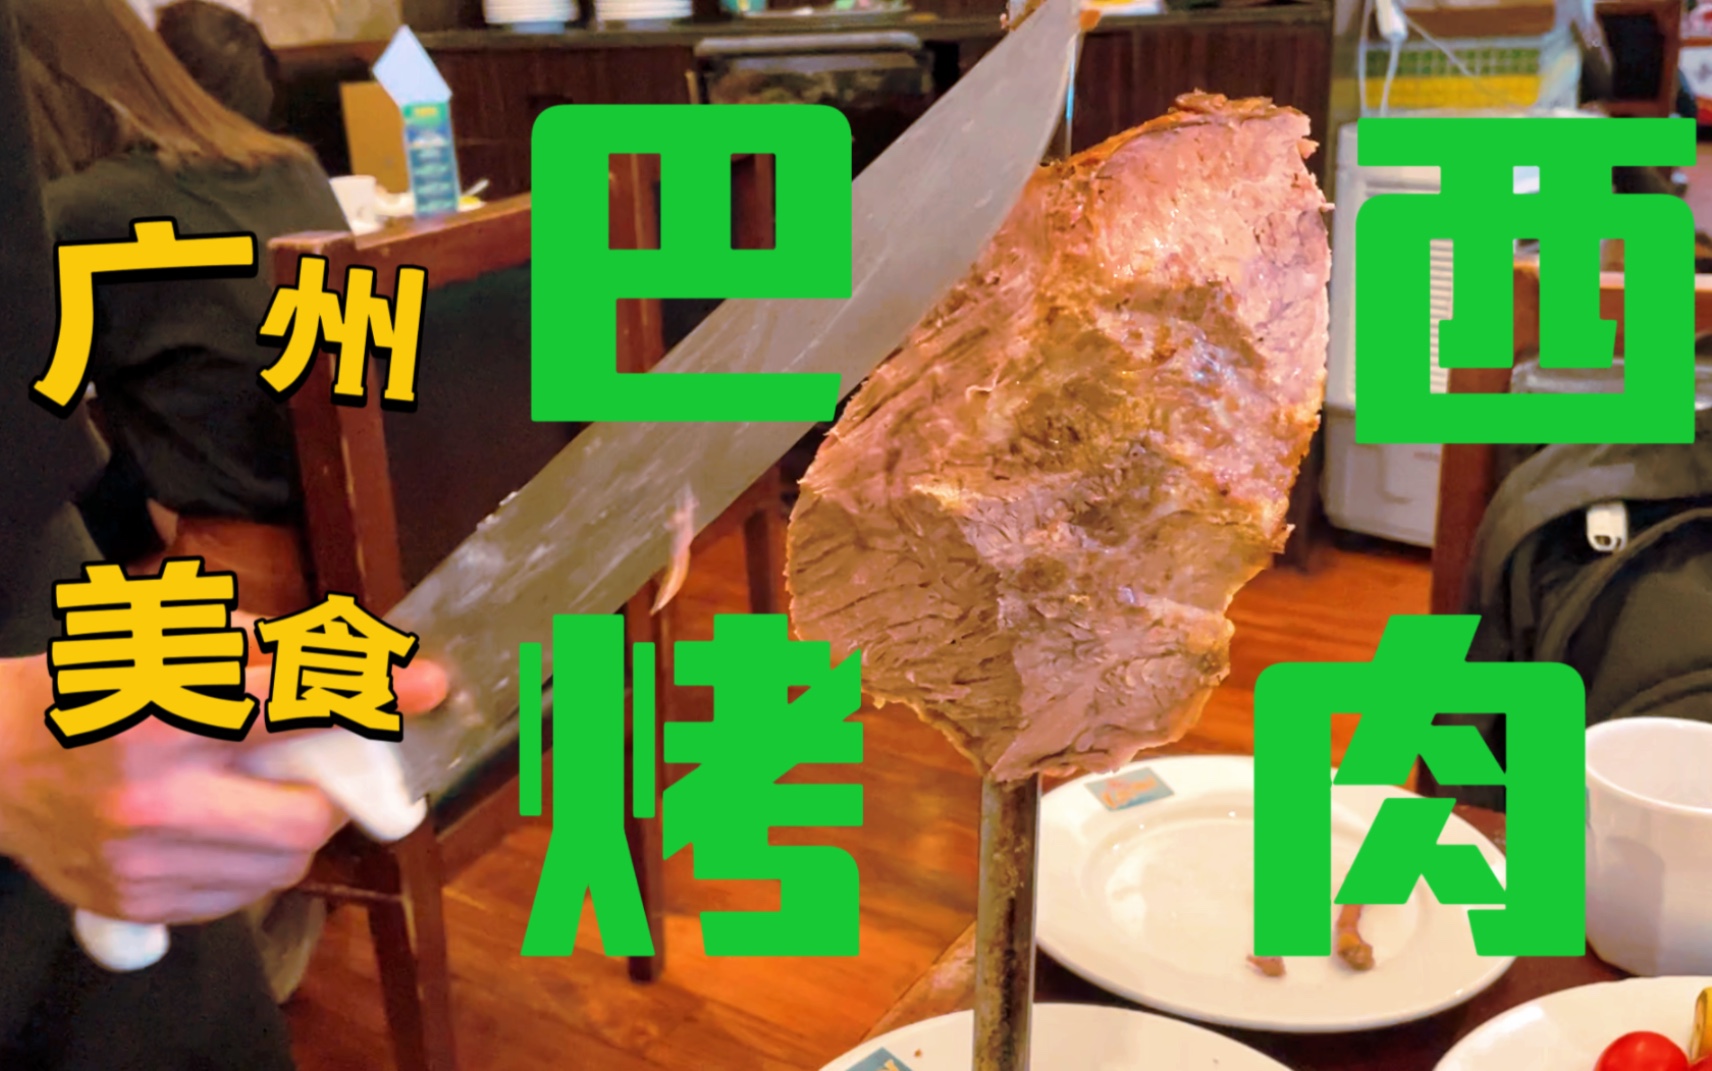 〖广州〗在广州就能吃上正宗的巴西烤肉？打卡一家主做烤肉的自助餐厅，看能不能实现肉类自由～